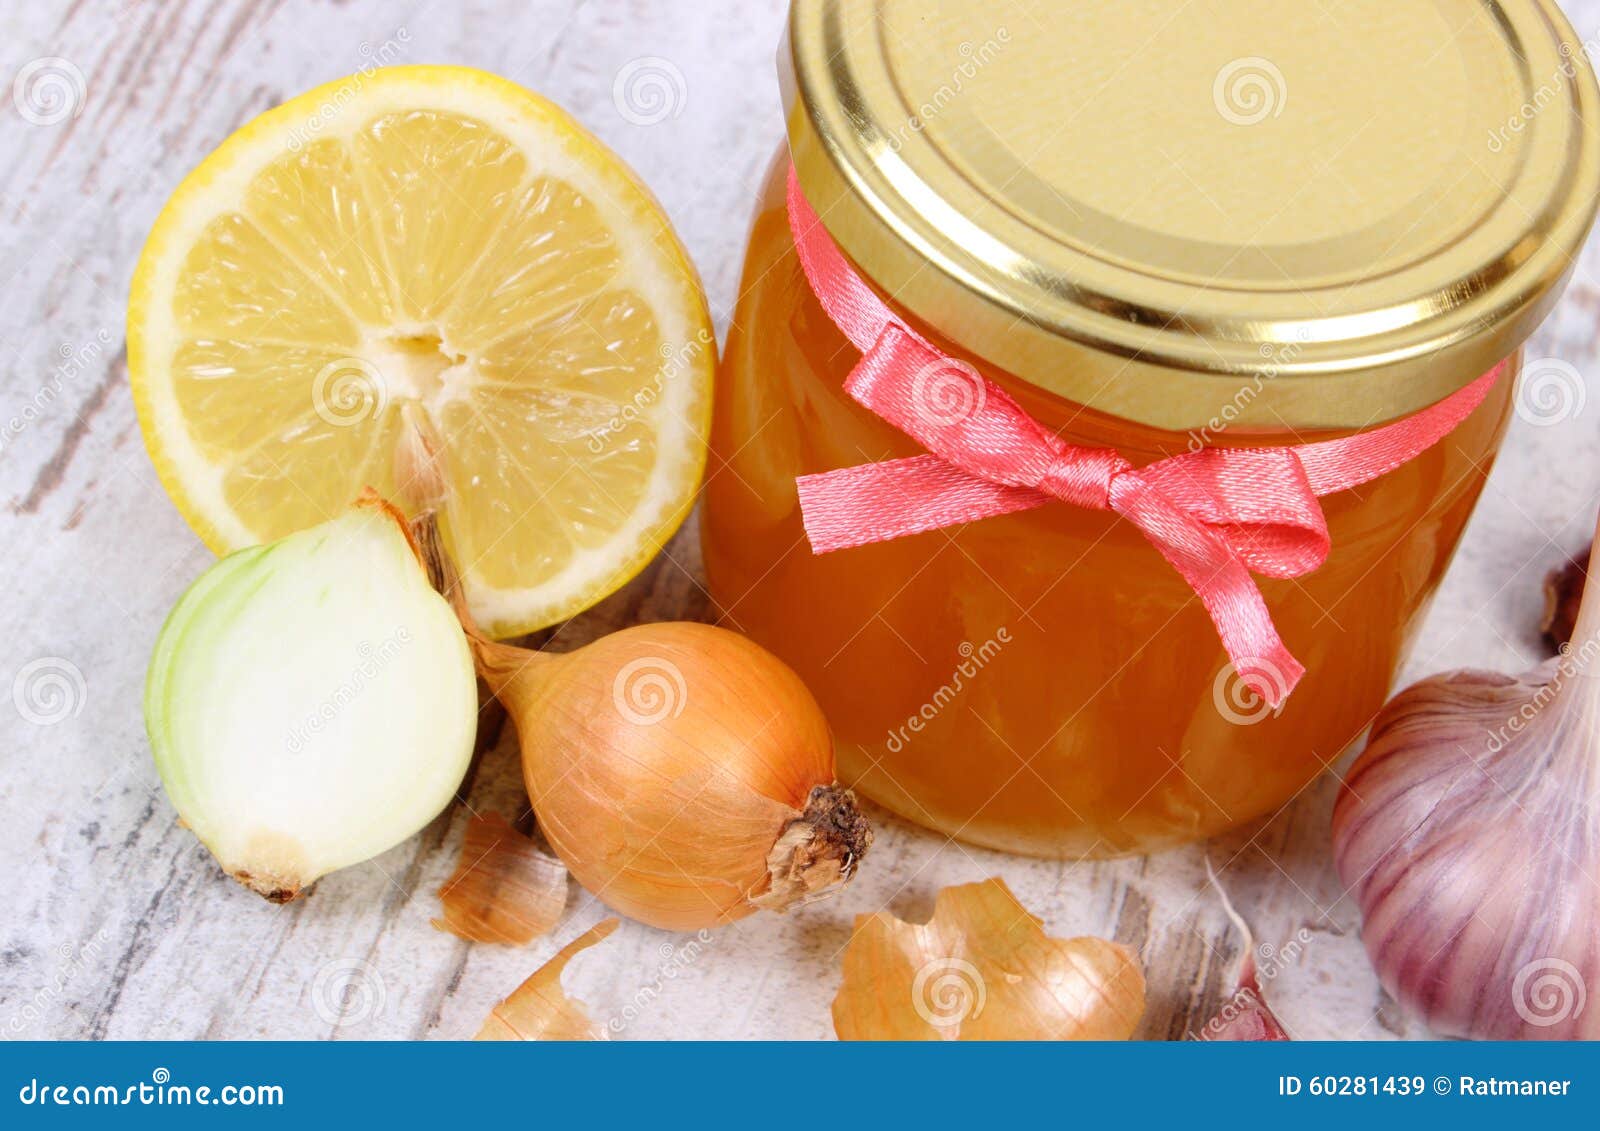 Μέλι με κανέλα: Δείτε τα κρυφά οφέλη για την υγεία!